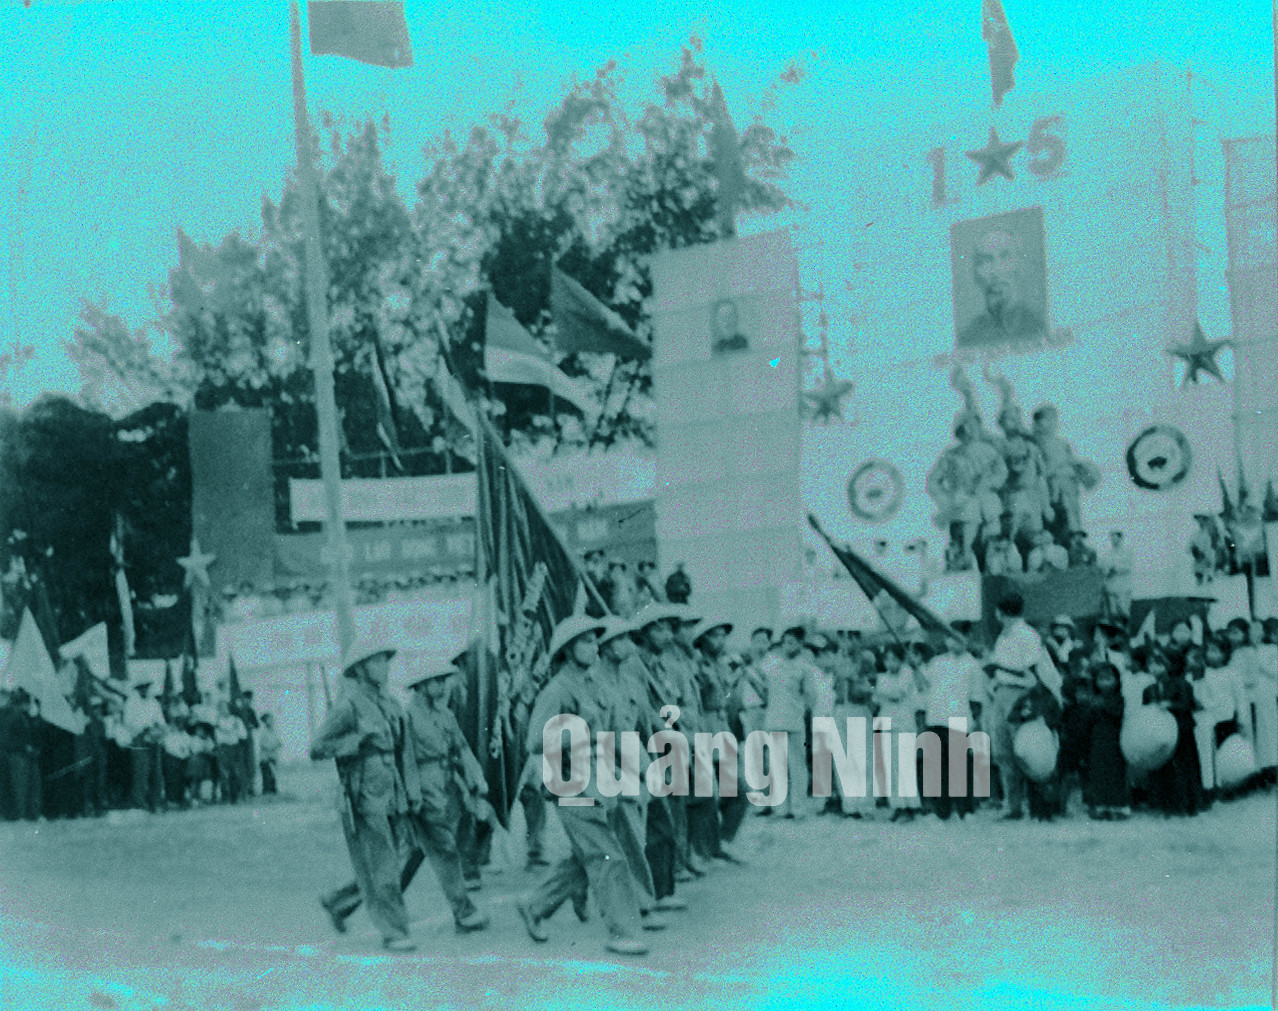 Bộ đội diễu hành trong buổi mít tinh mừng vùng mỏ được giải phóng tổ chức tại Hòn Gai (1-5-1955). Ảnh tư liệu của Bảo tàng Quảng Ninh